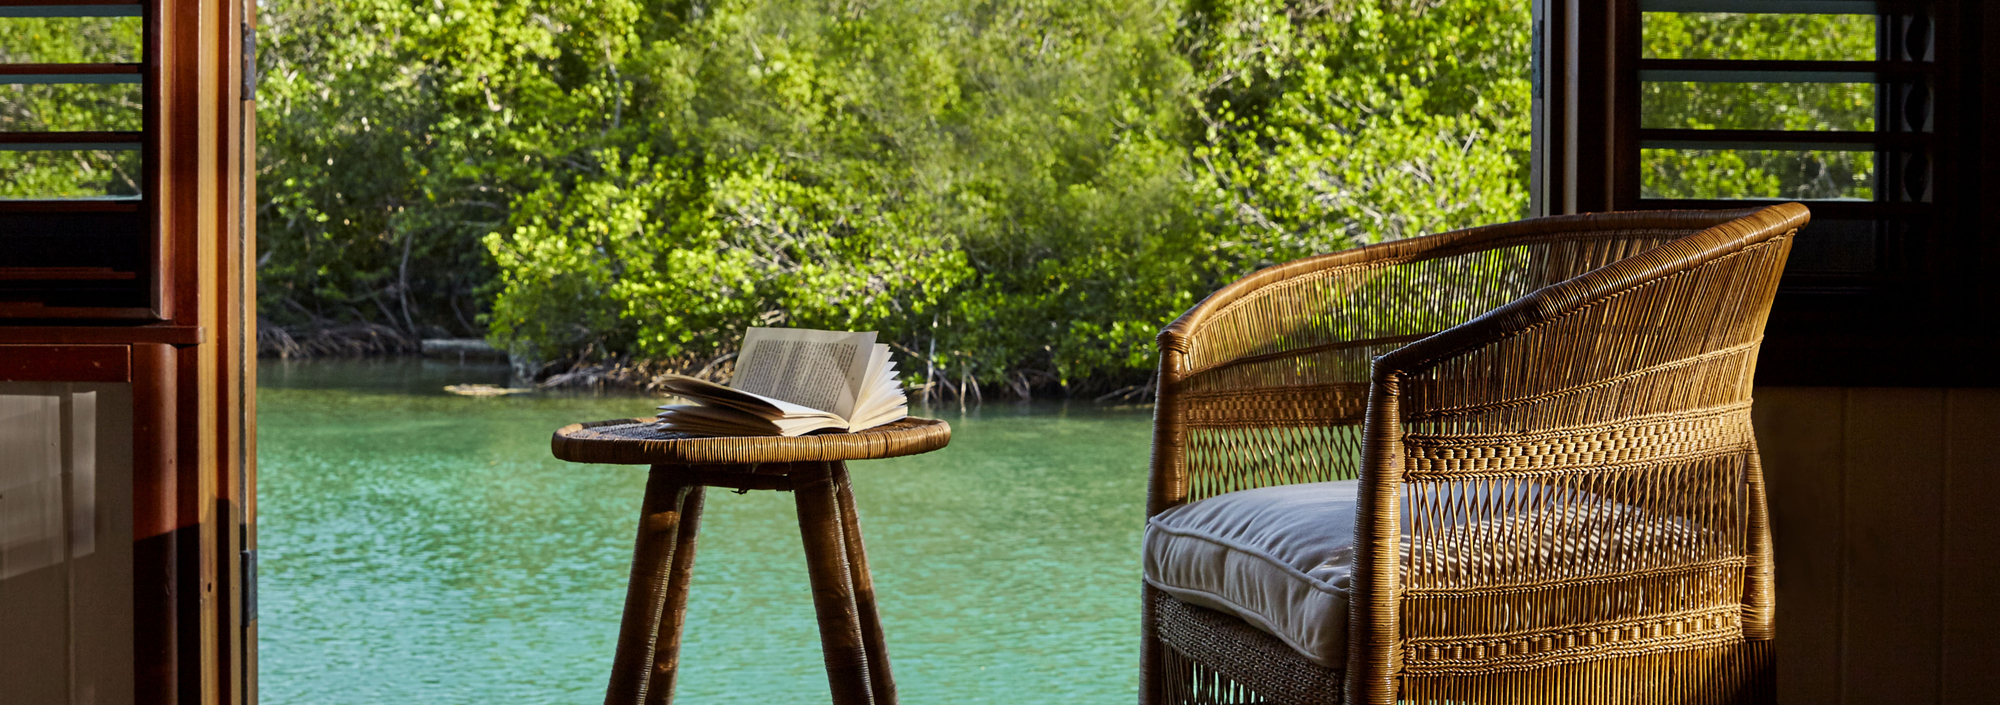 Aufgeschlagenes Buch auf einer Sitzgruppe einer Terrasse direkt am Meer mit tropischem Hintergrund